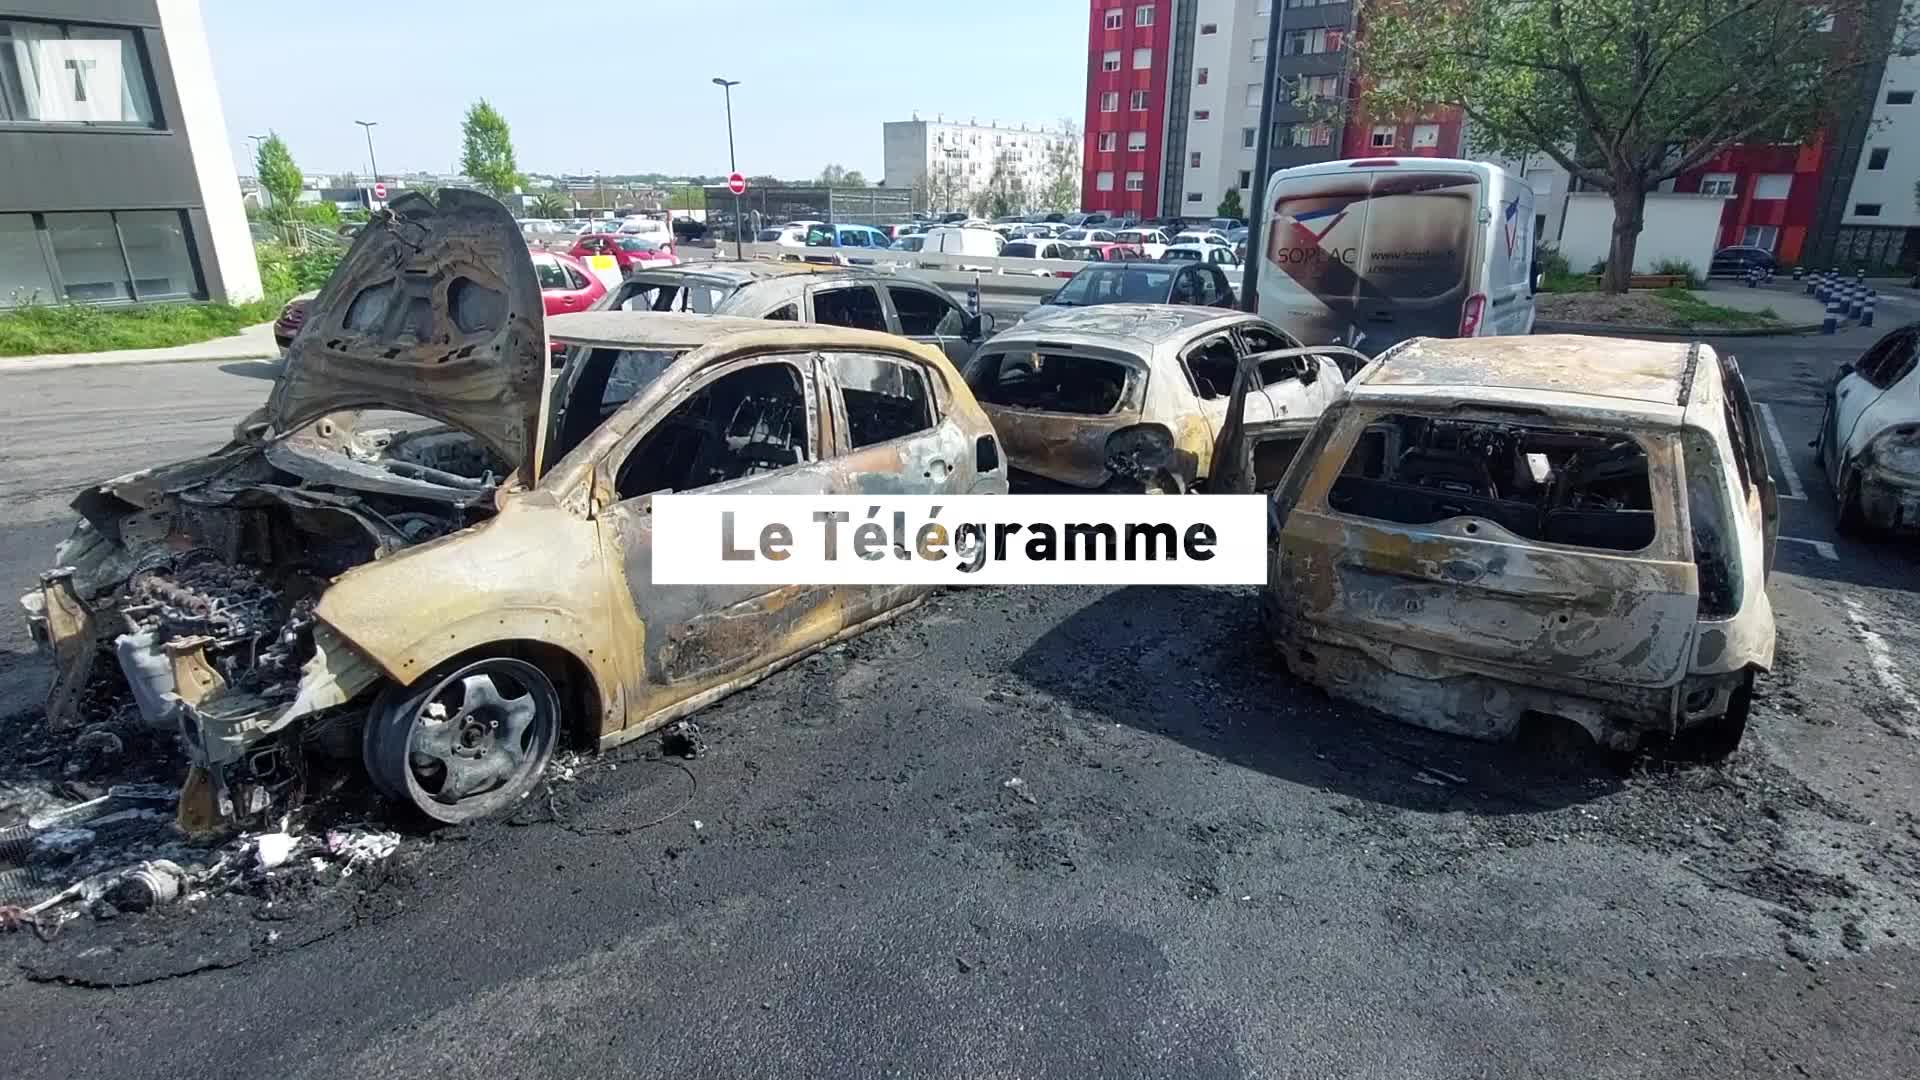 Une dizaine de voitures brûlées à Brest en une seule nuit : « On en a plus que marre » [Vidéo]